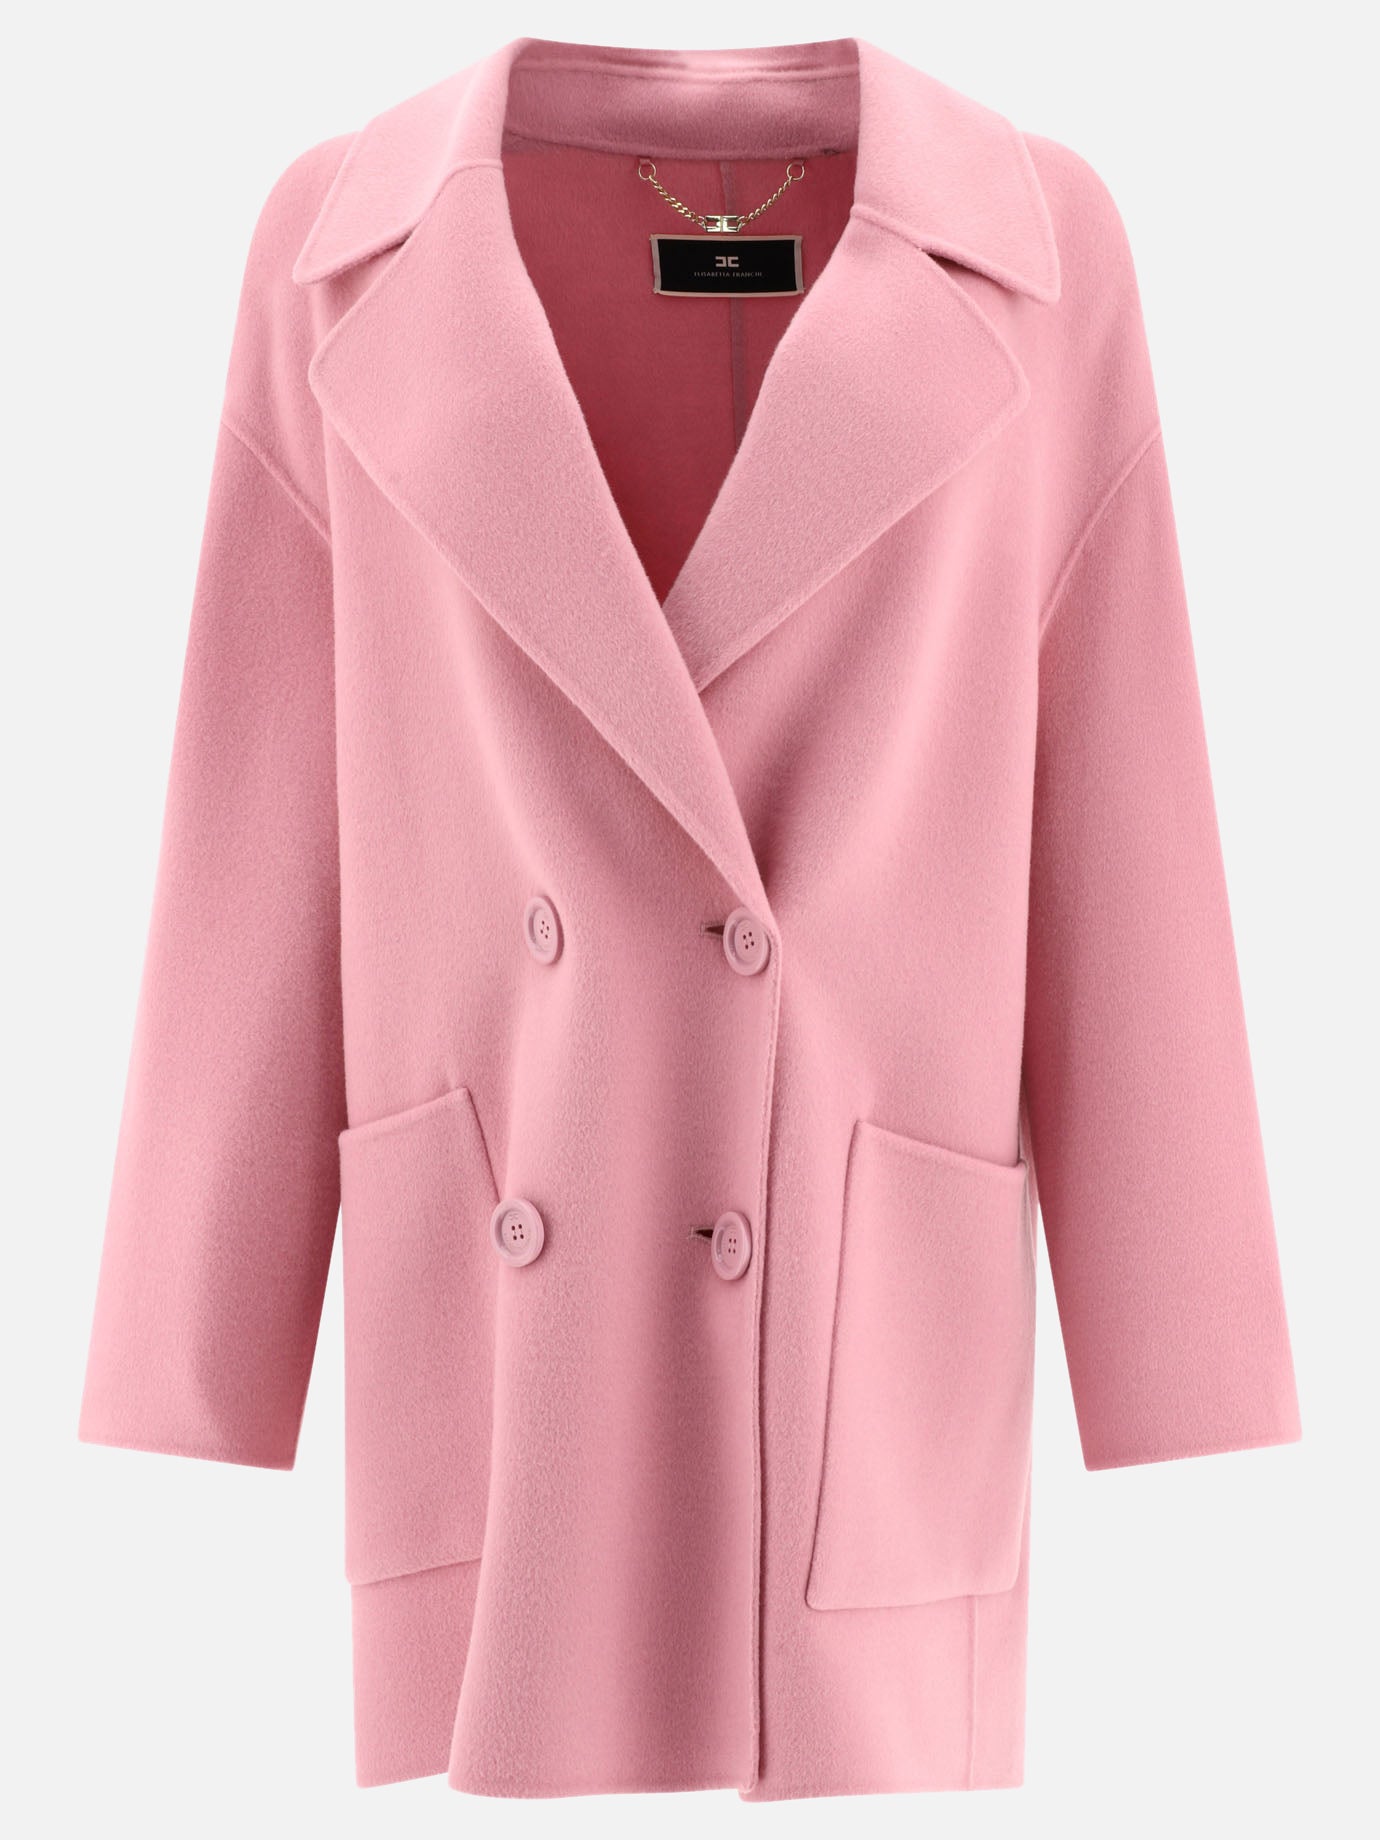 Refeer jacket-cut short wool coat